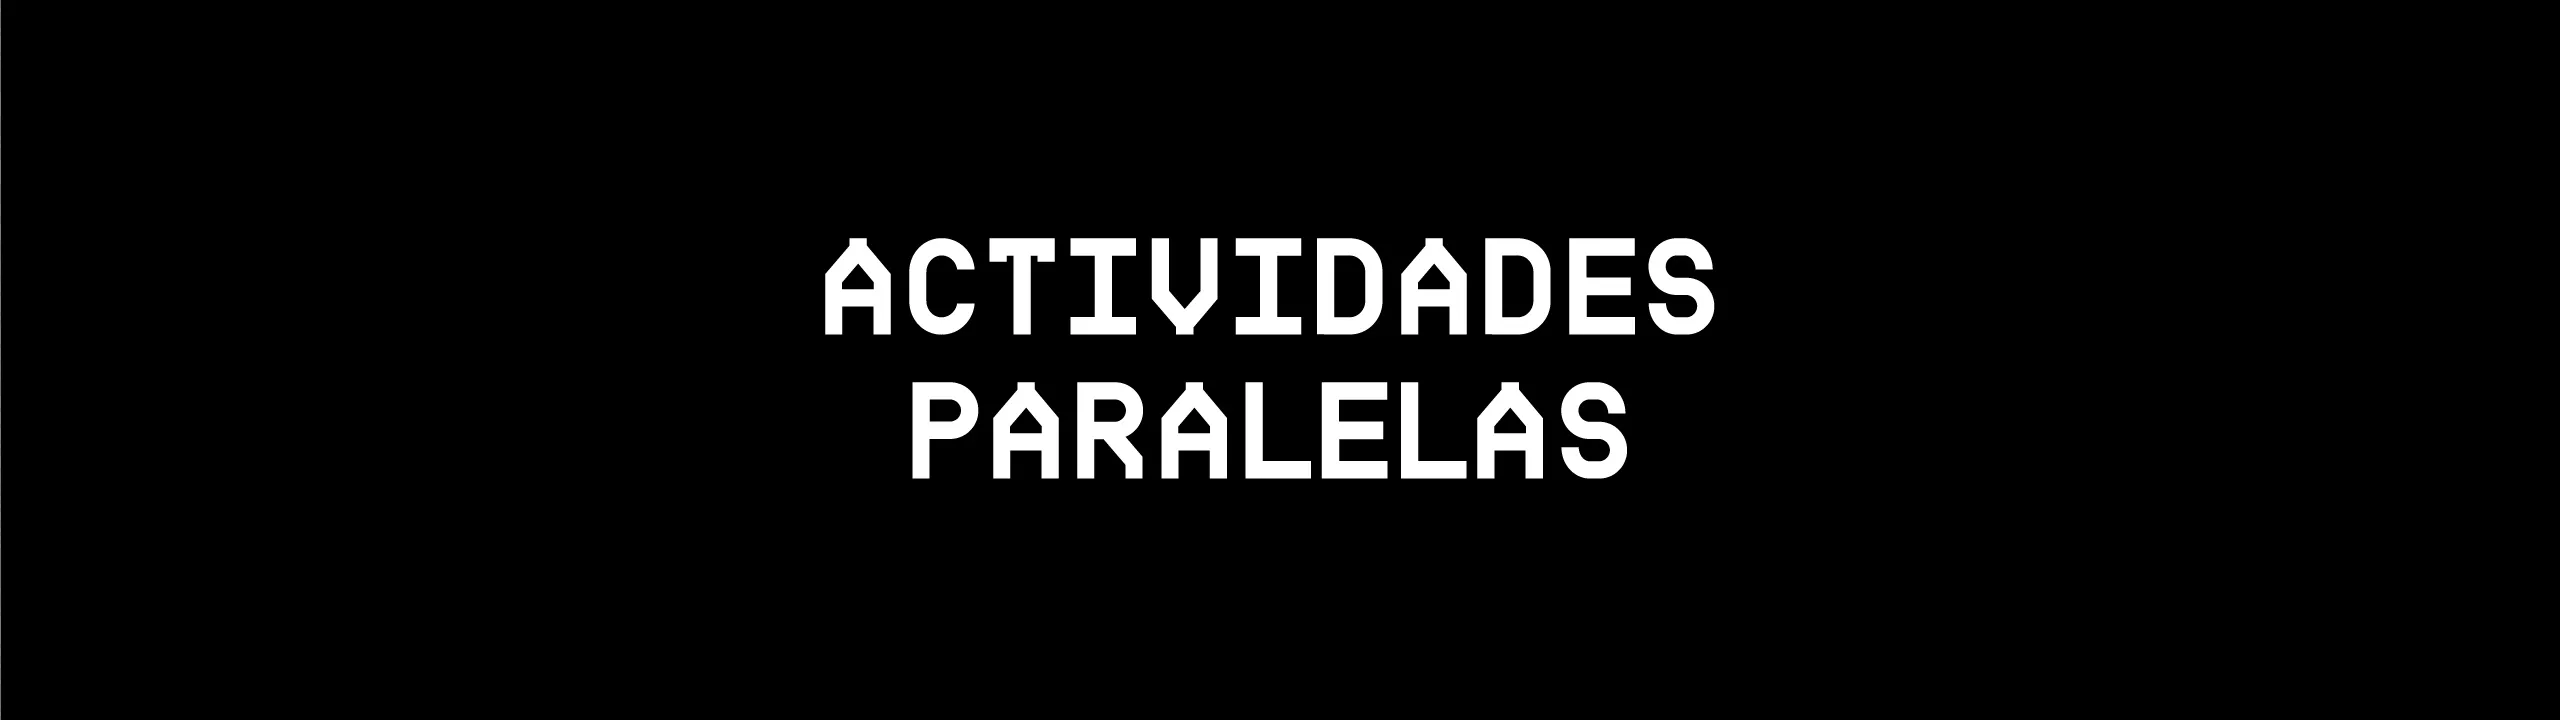 Actividades Paralelas FICC51